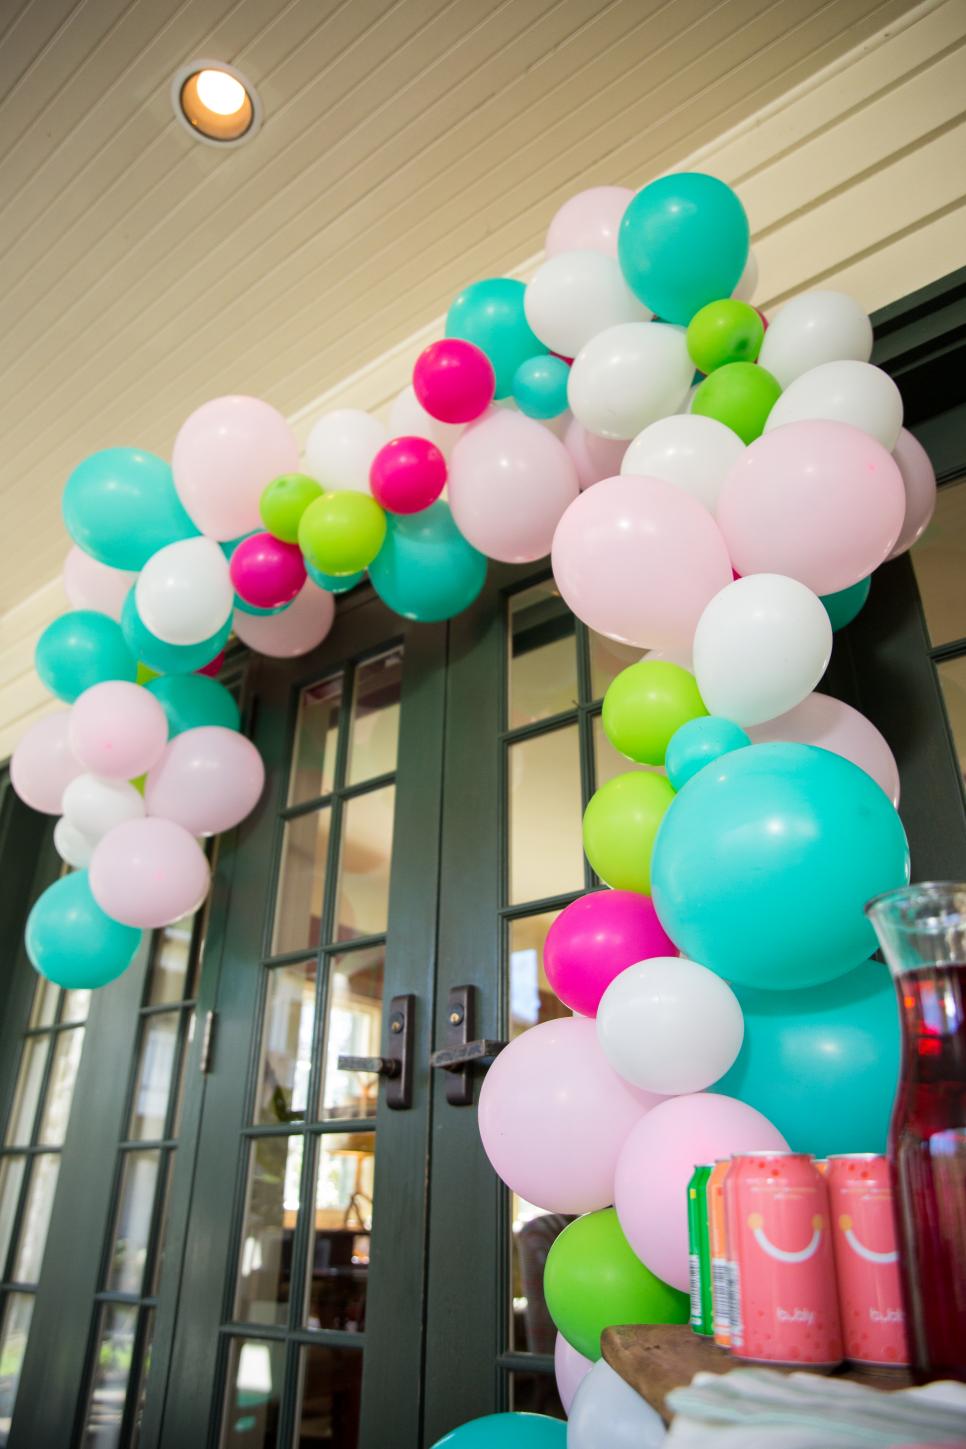 A DIY Balloon Garland Makes the Perfect Backyard Party Decor | HGTV